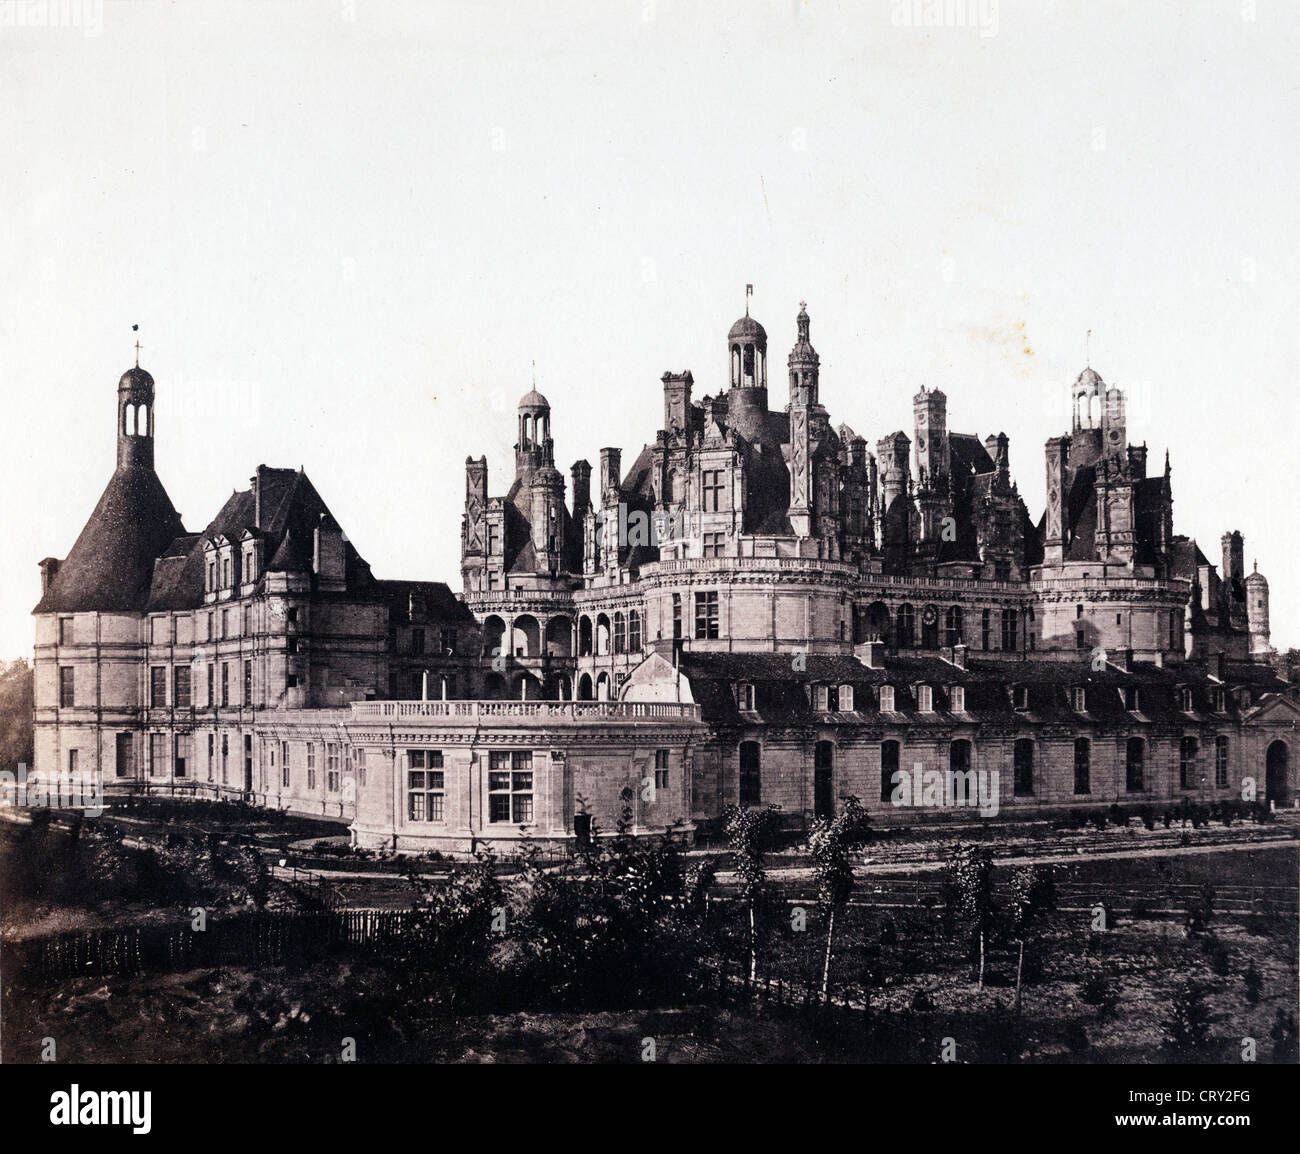 Chateau de Chambord, ca 1850 Stock Photo